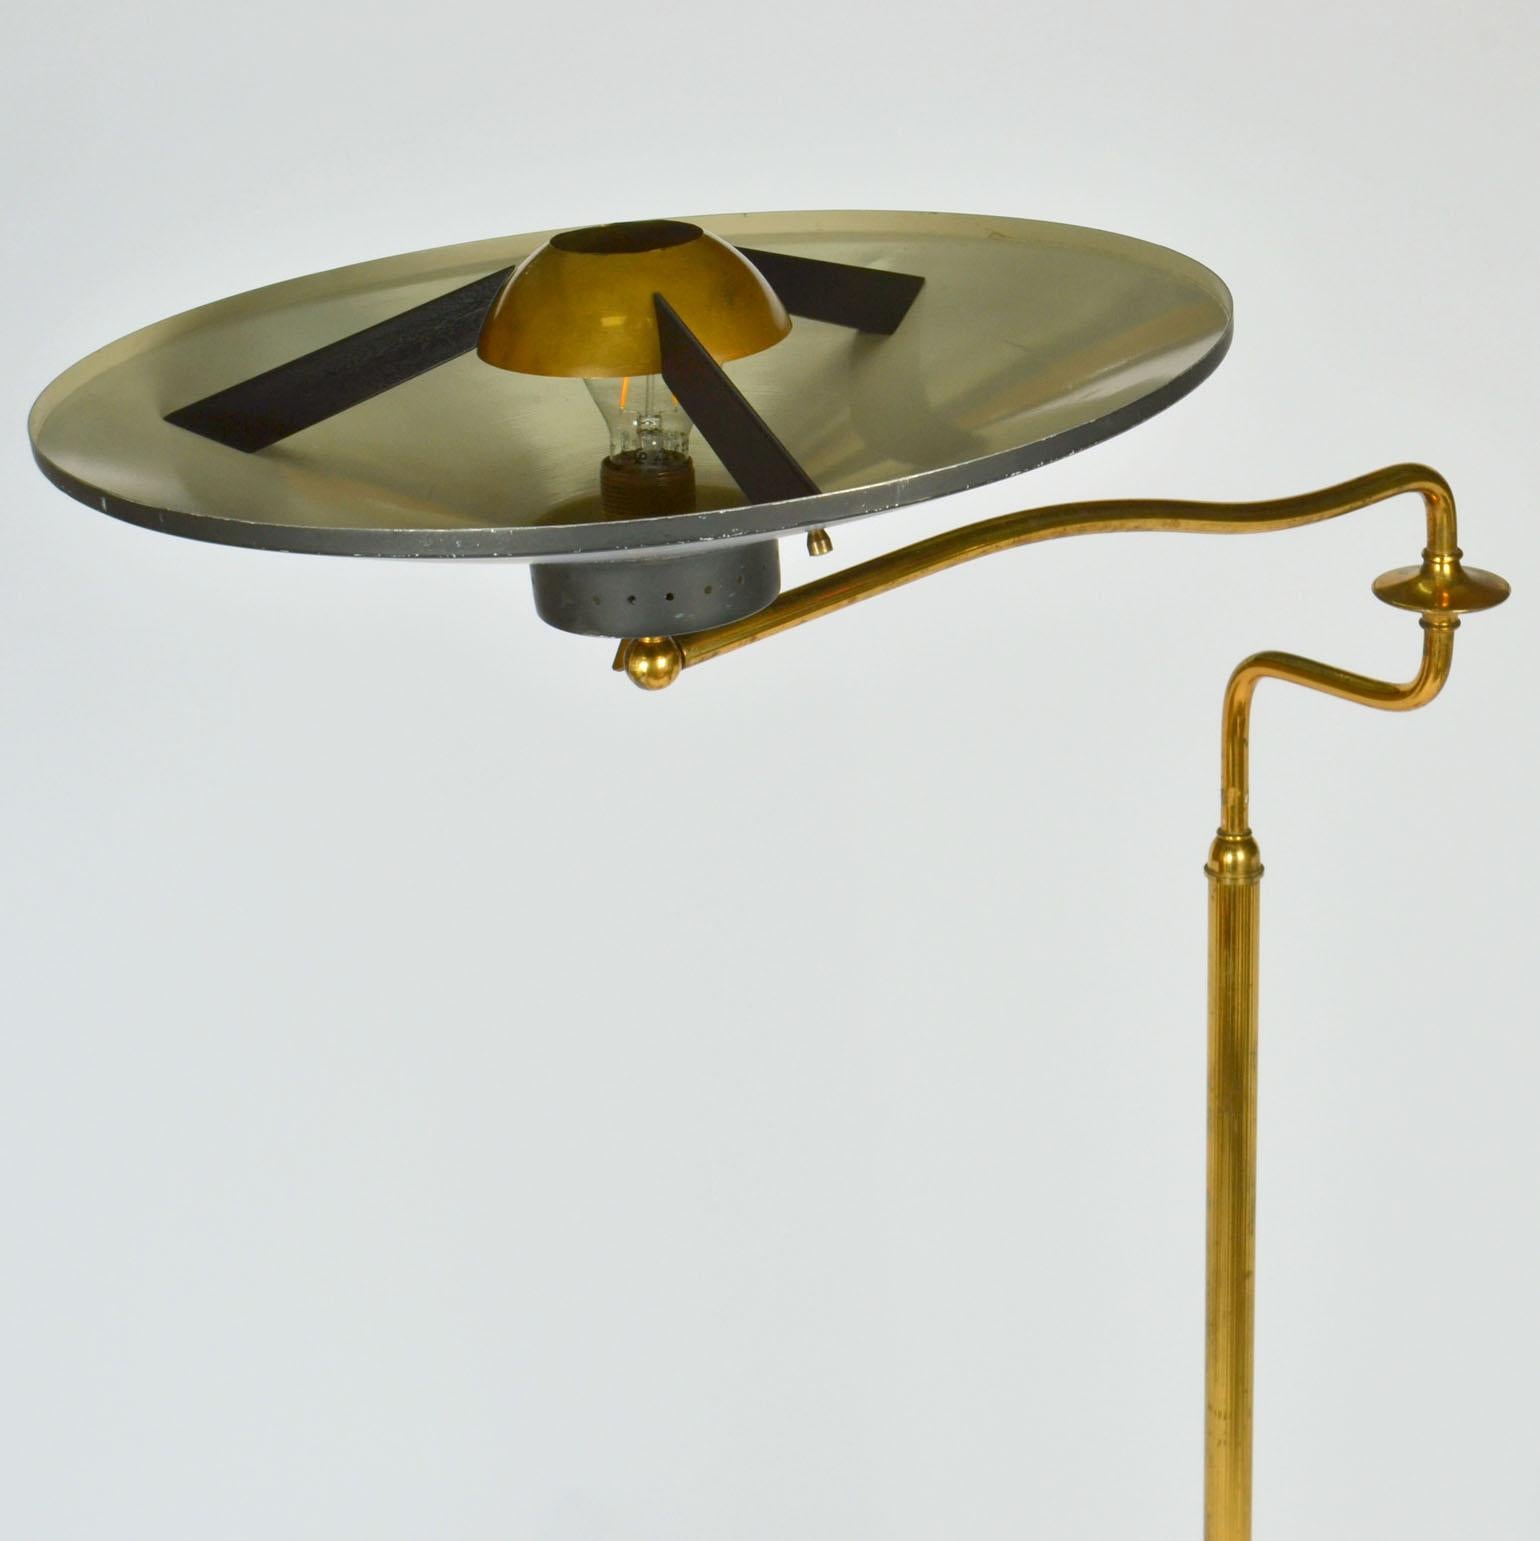 Italian Swing Arm Brass Floor Lamp, Original Black Shade, 1950's Stilnovo Style For Sale 2